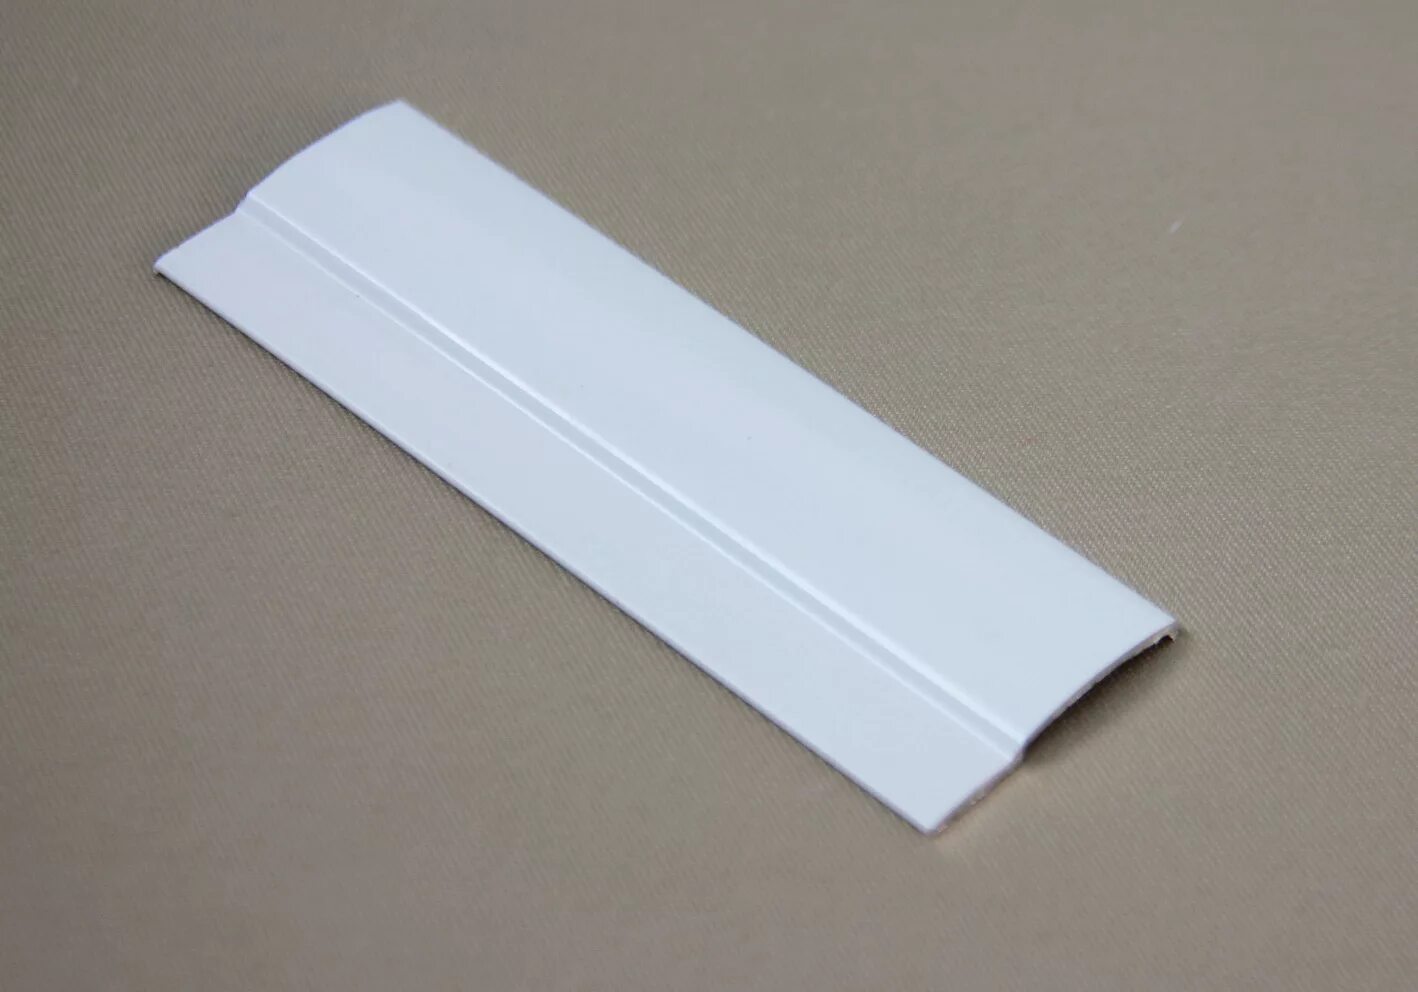 Уни 1 мая. Направляющая плоская алюминиевая Uni 1 l=4 м белая (алюминий). Направляющая плоская Uni 1. Направляющая плоская Uni 1 l=4 м белая. Направляющая плоская алюминиевая Uni 1.